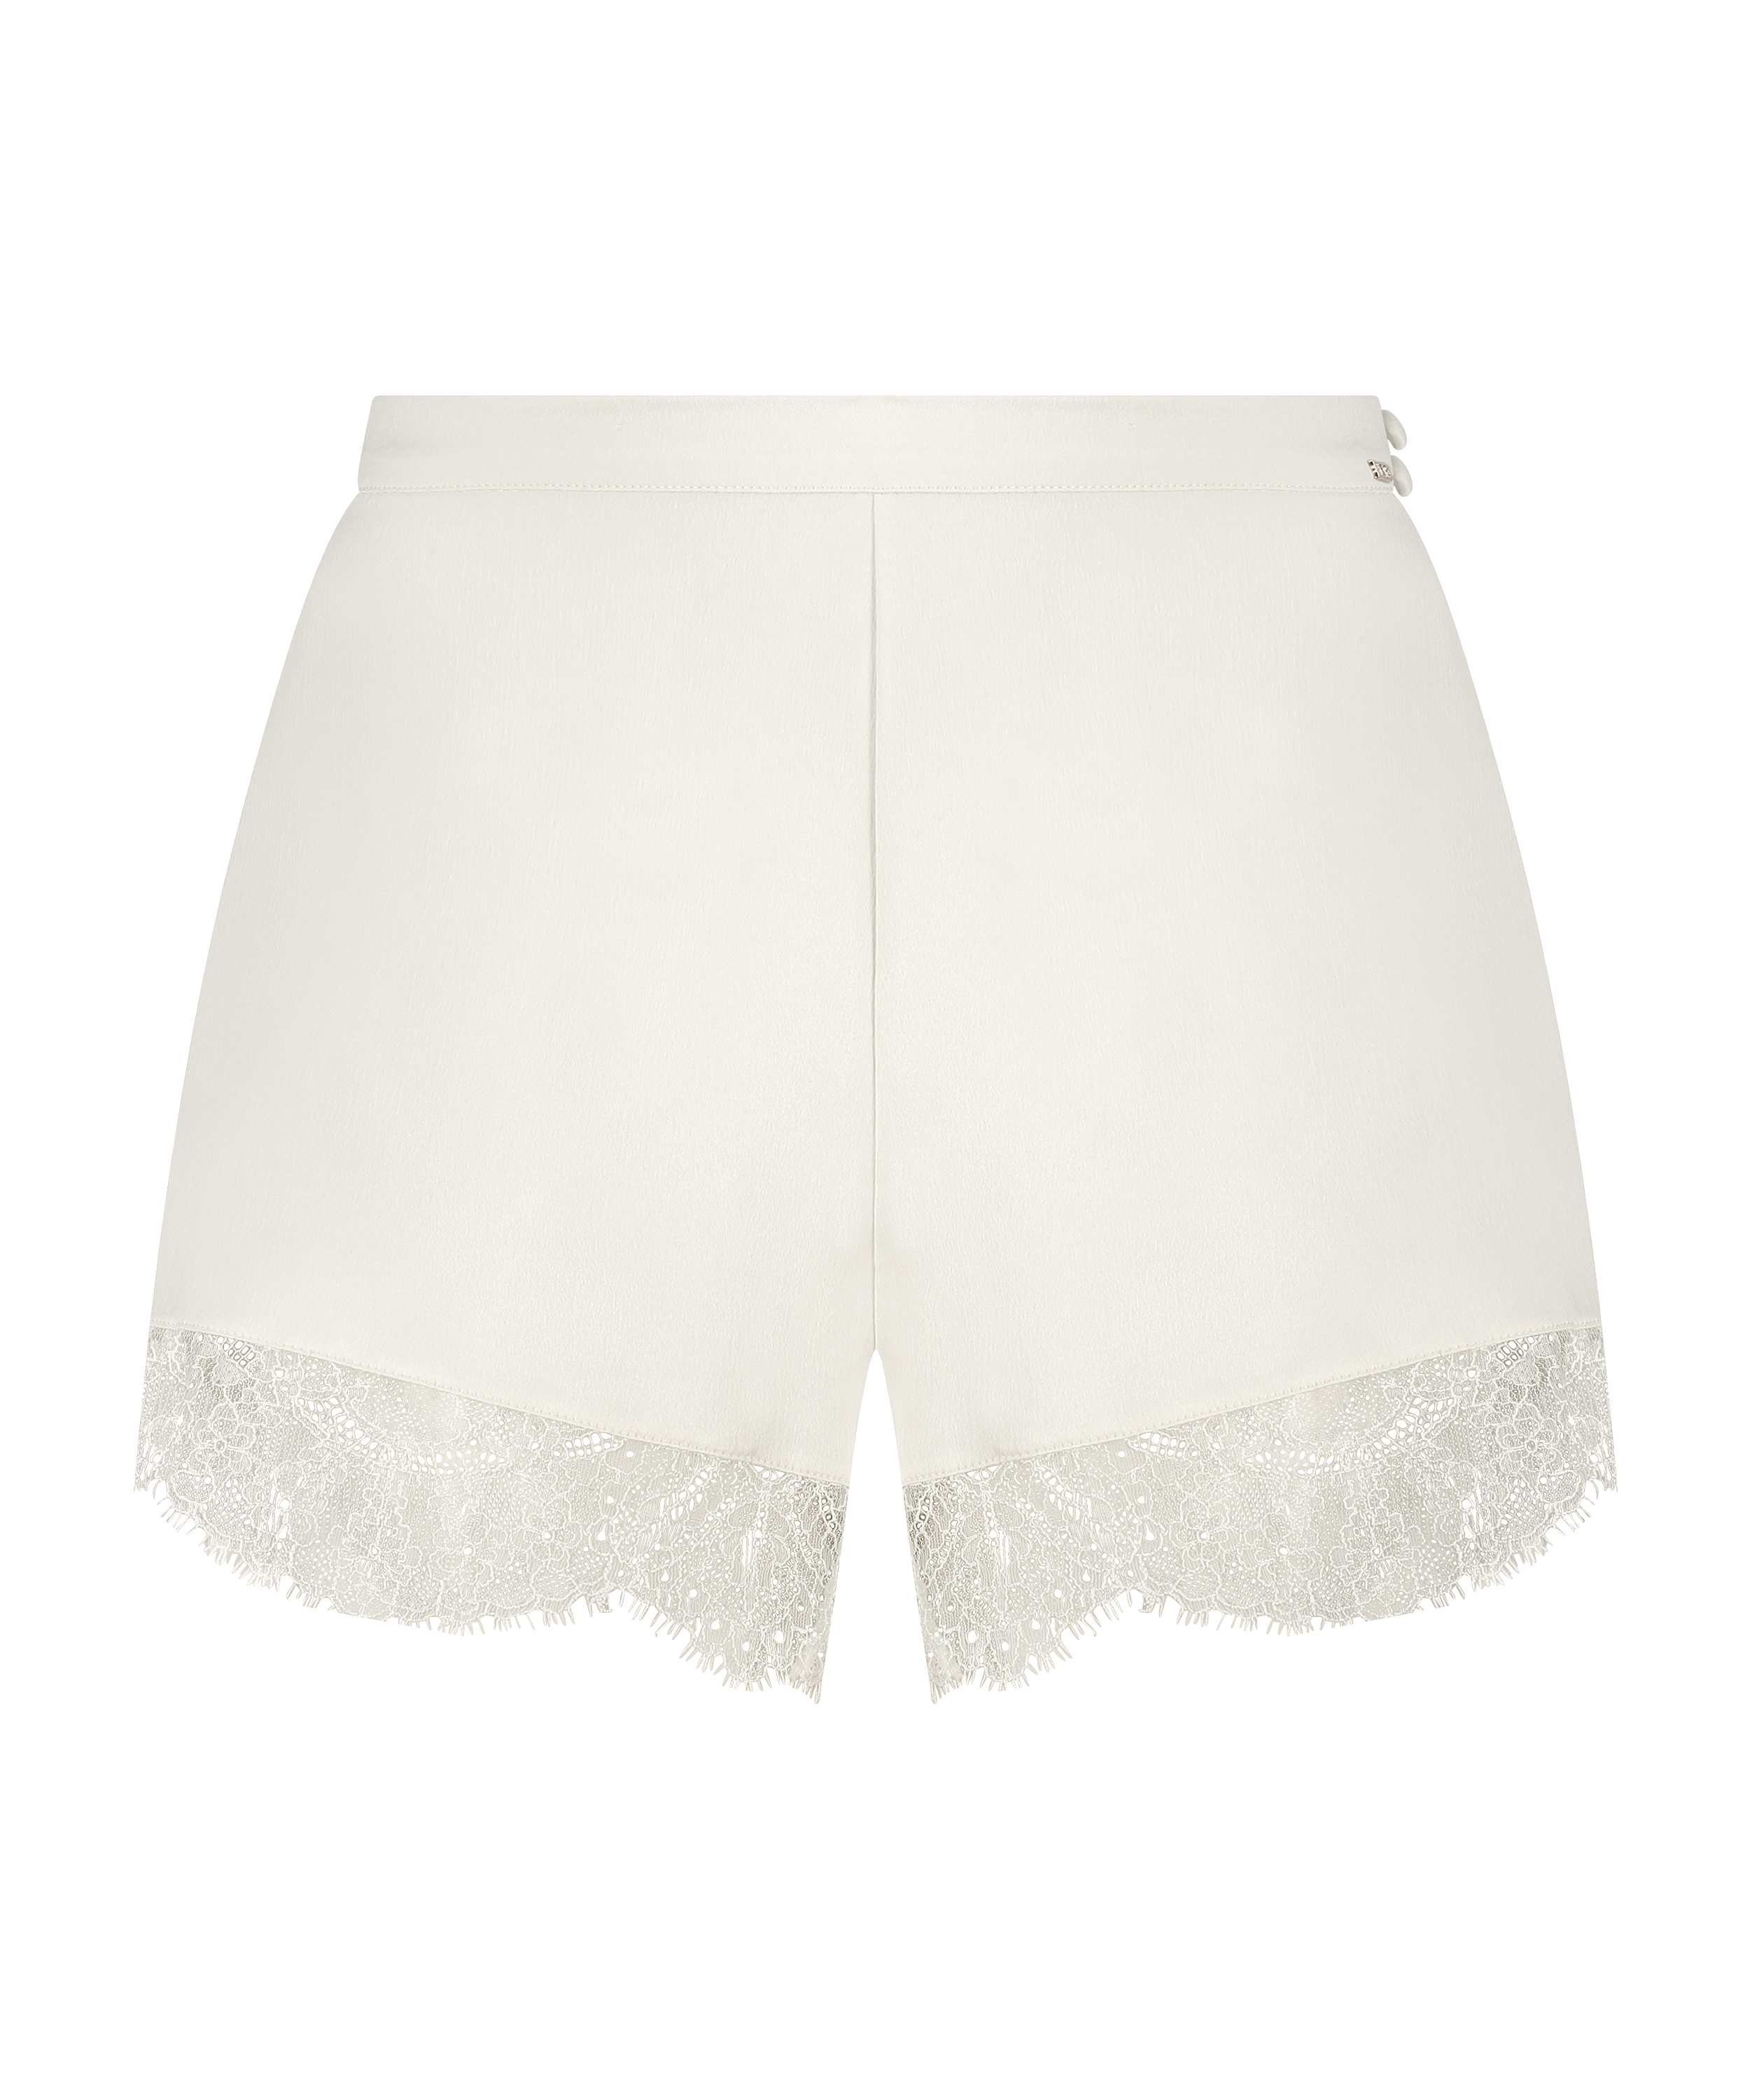 Satin shorts Camille, hvid, main